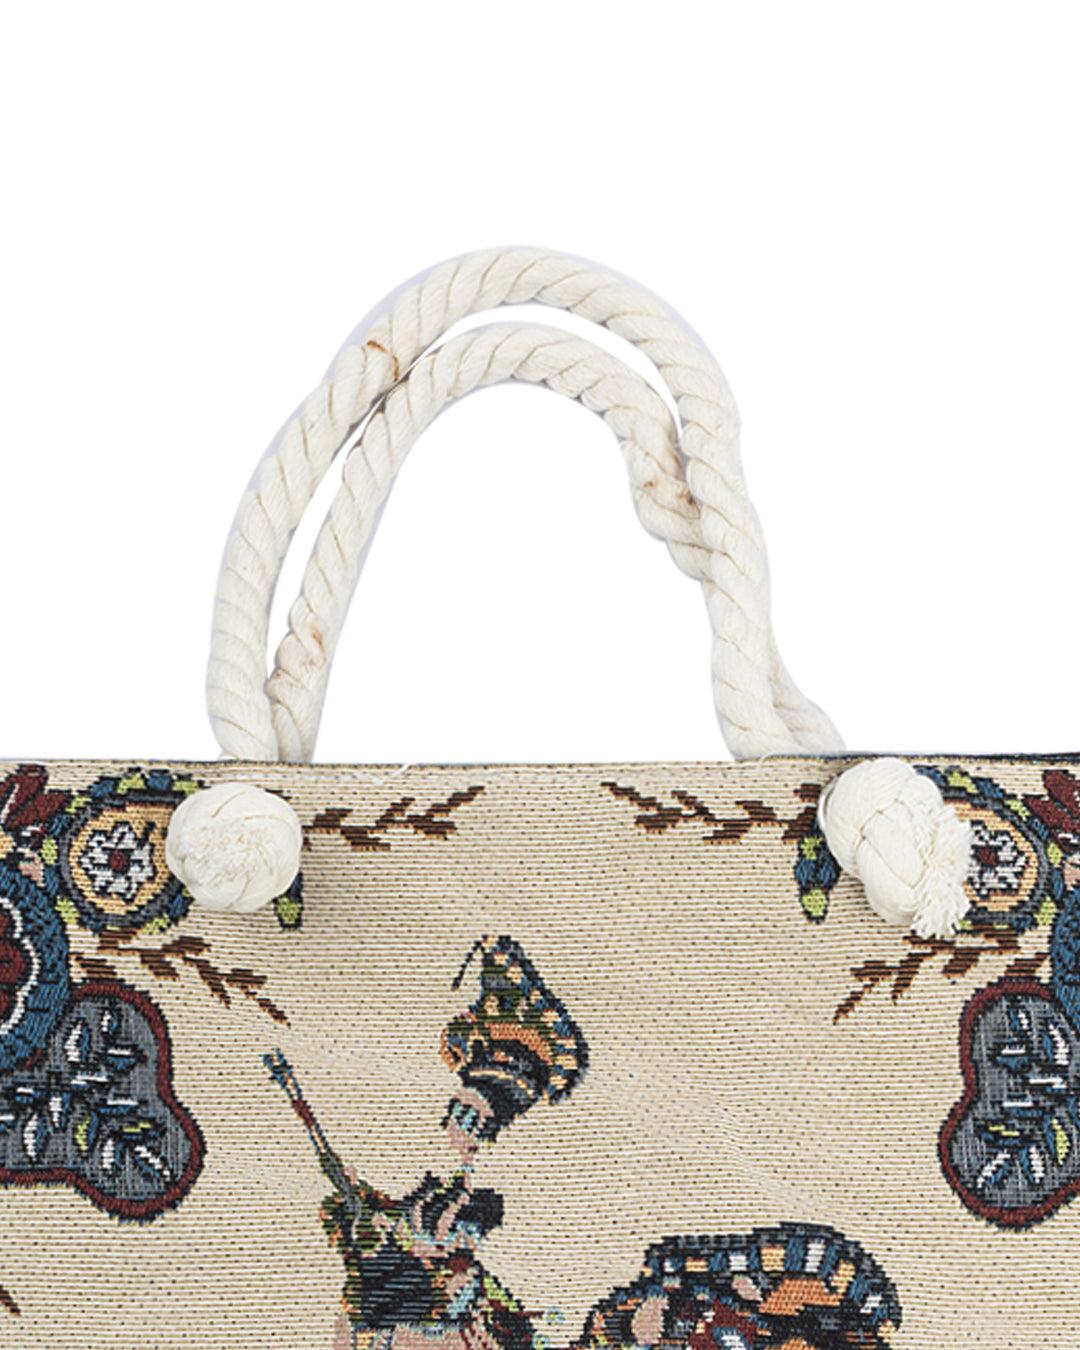 Donati Tote Bag, Elephant Print, Multicolour, Cotton - DONATI – MARKET 99